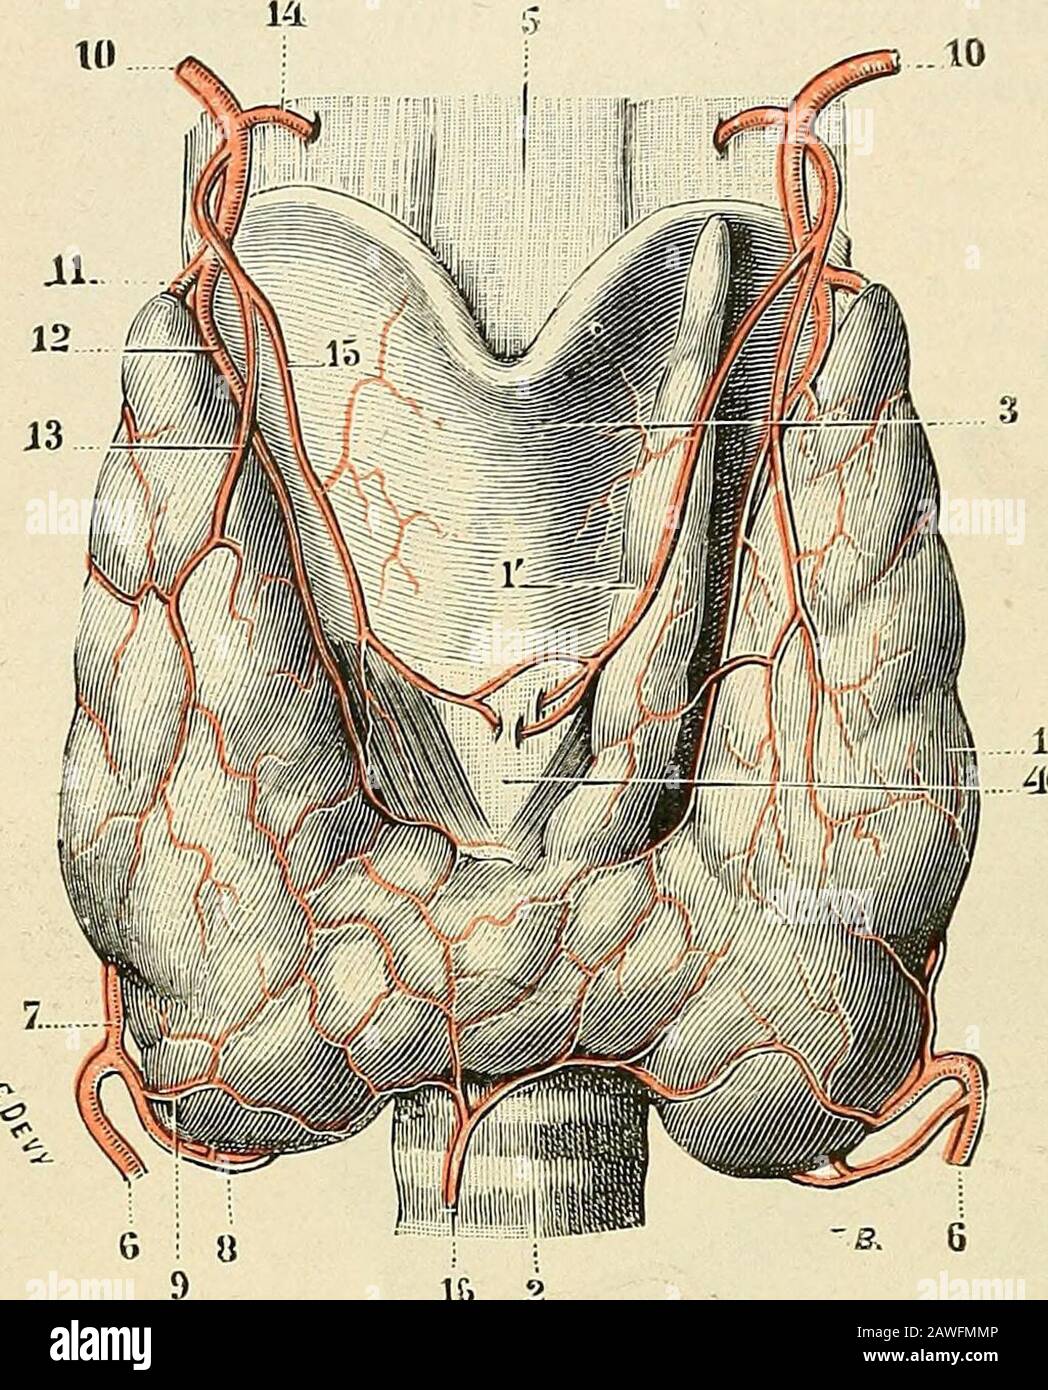 Traité d'anatomie humaine . te ; des rameaux descendants, quise perdent dans  les muscles et dans lamuqueuse du larynx. 3° Vartère laryngée  inférieure(fig. 103,15), beaucoup plus grêle quela précédente, se porte sur